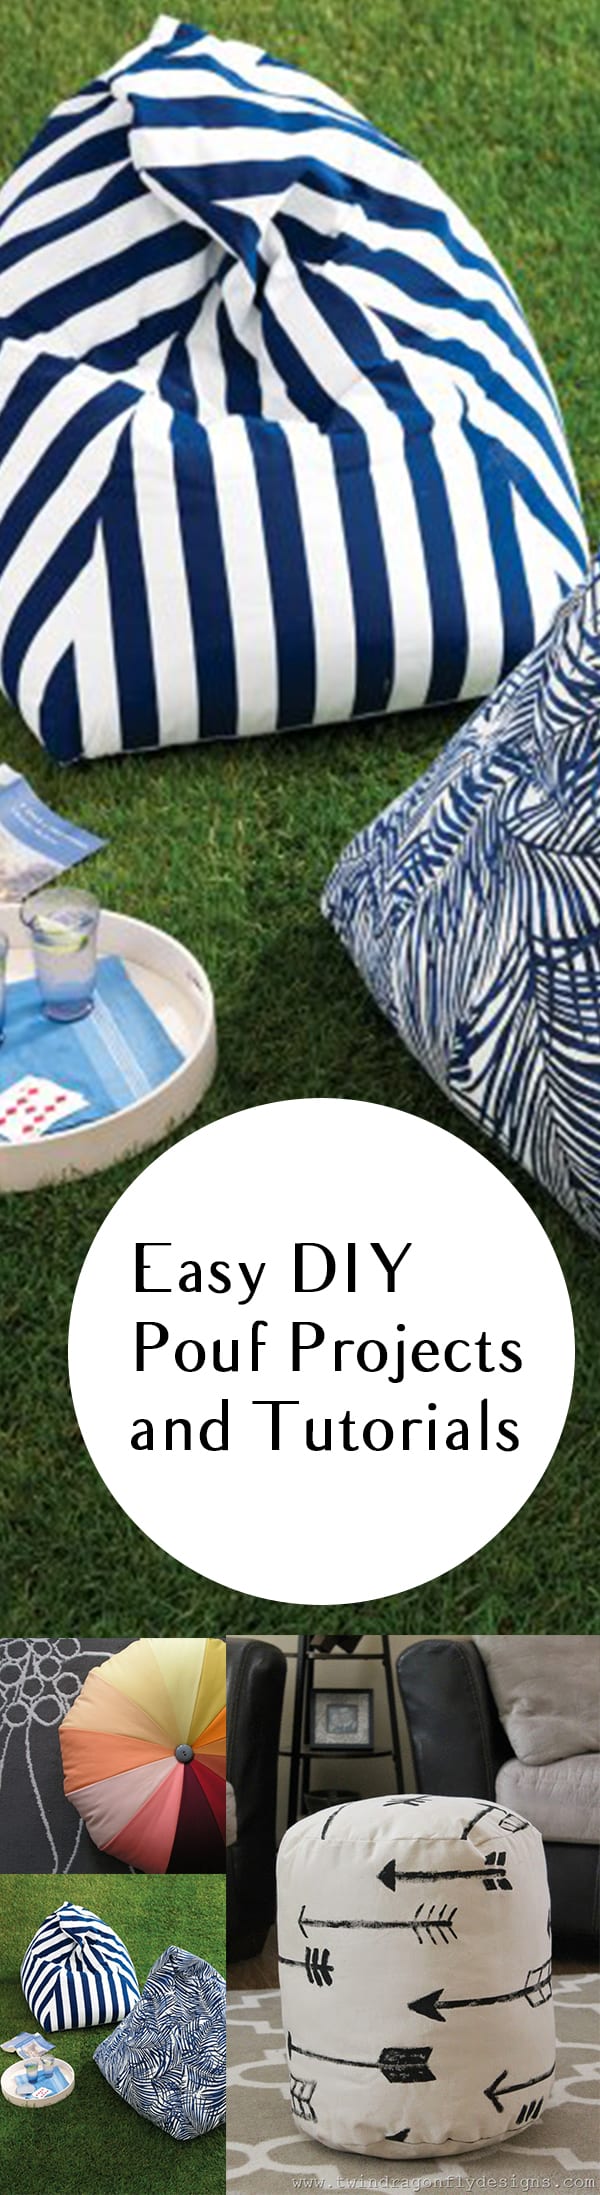 DIY pouf projects, pouf tutorials, DIY tutorials, DIY crafting, easy crafts, popular post, DIY decor, DIY outdoor accessories